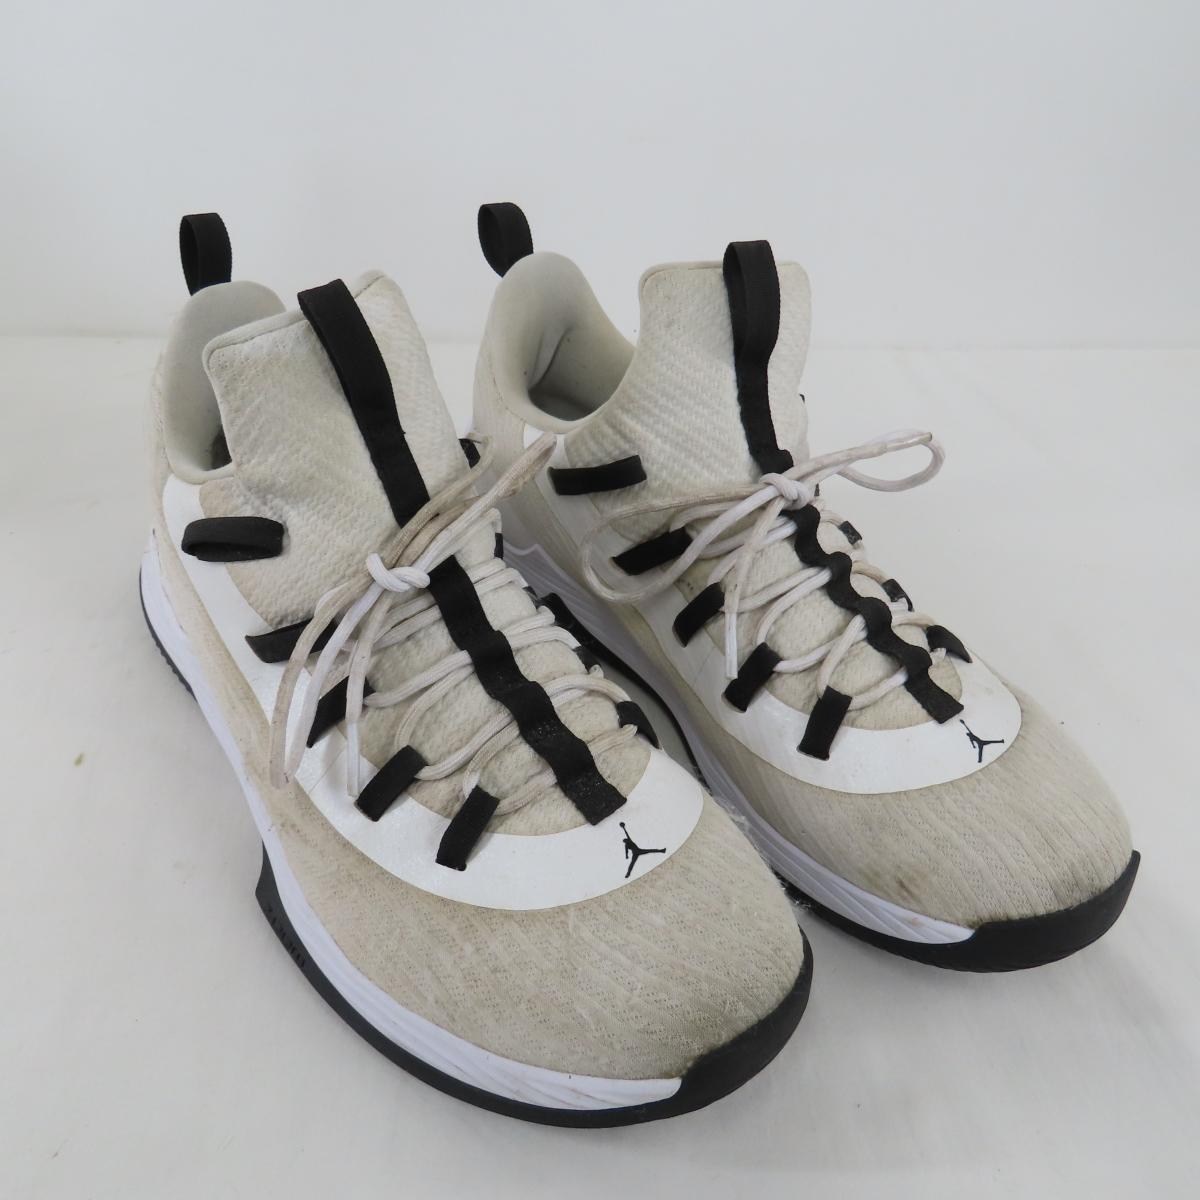 Air Jordan Sneakers, collectible baseballs & more